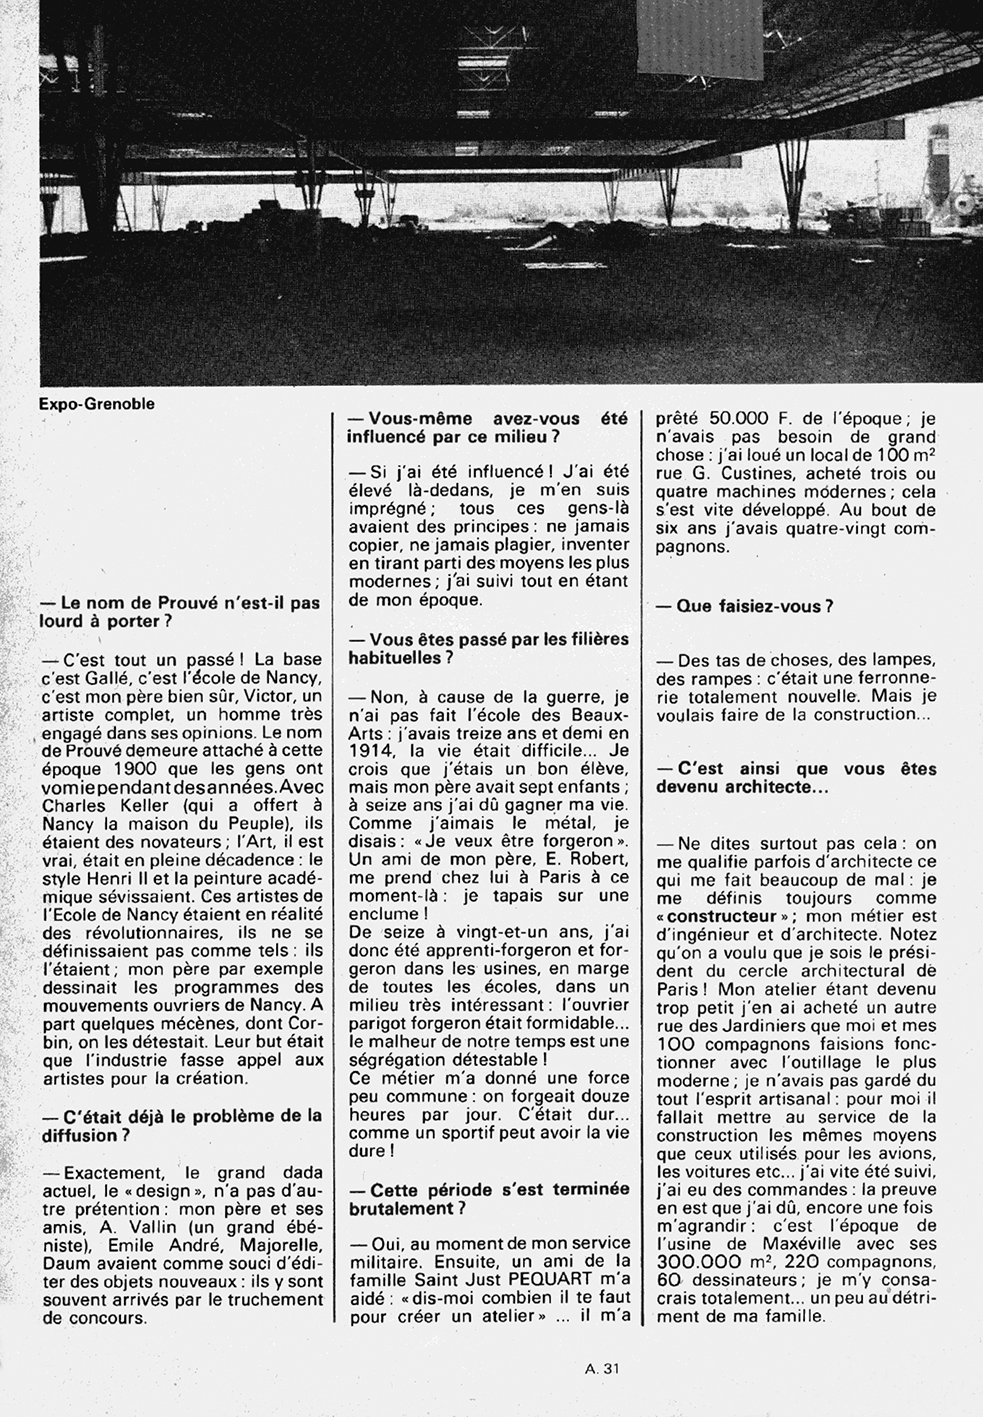 « L’architecture : une industrie », <i>A 31, mensuel de la Lorraine et du Luxembourg,</i> n° 13 (févr. 1974).